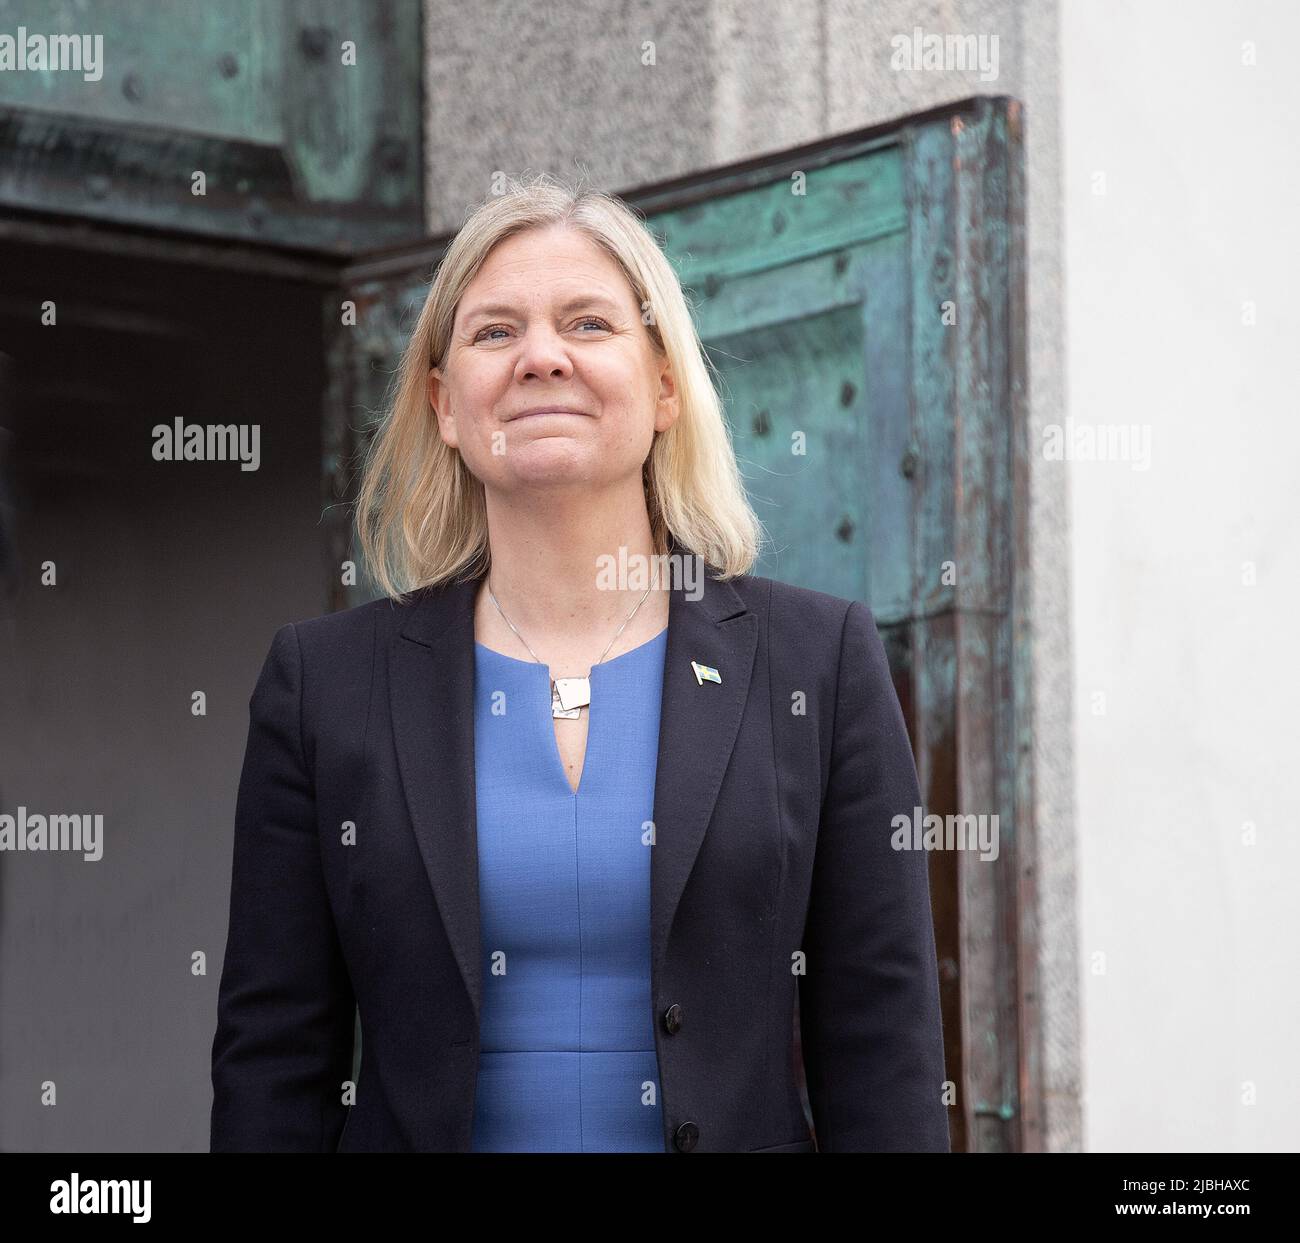 Schweden hat eine neue Premierministerin - Schwedens erste Frau. Magdalena Andersson Sozialistische Partei, sie ist ehemalige Finanzministerin Foto: Bo Arrhed Stockfoto